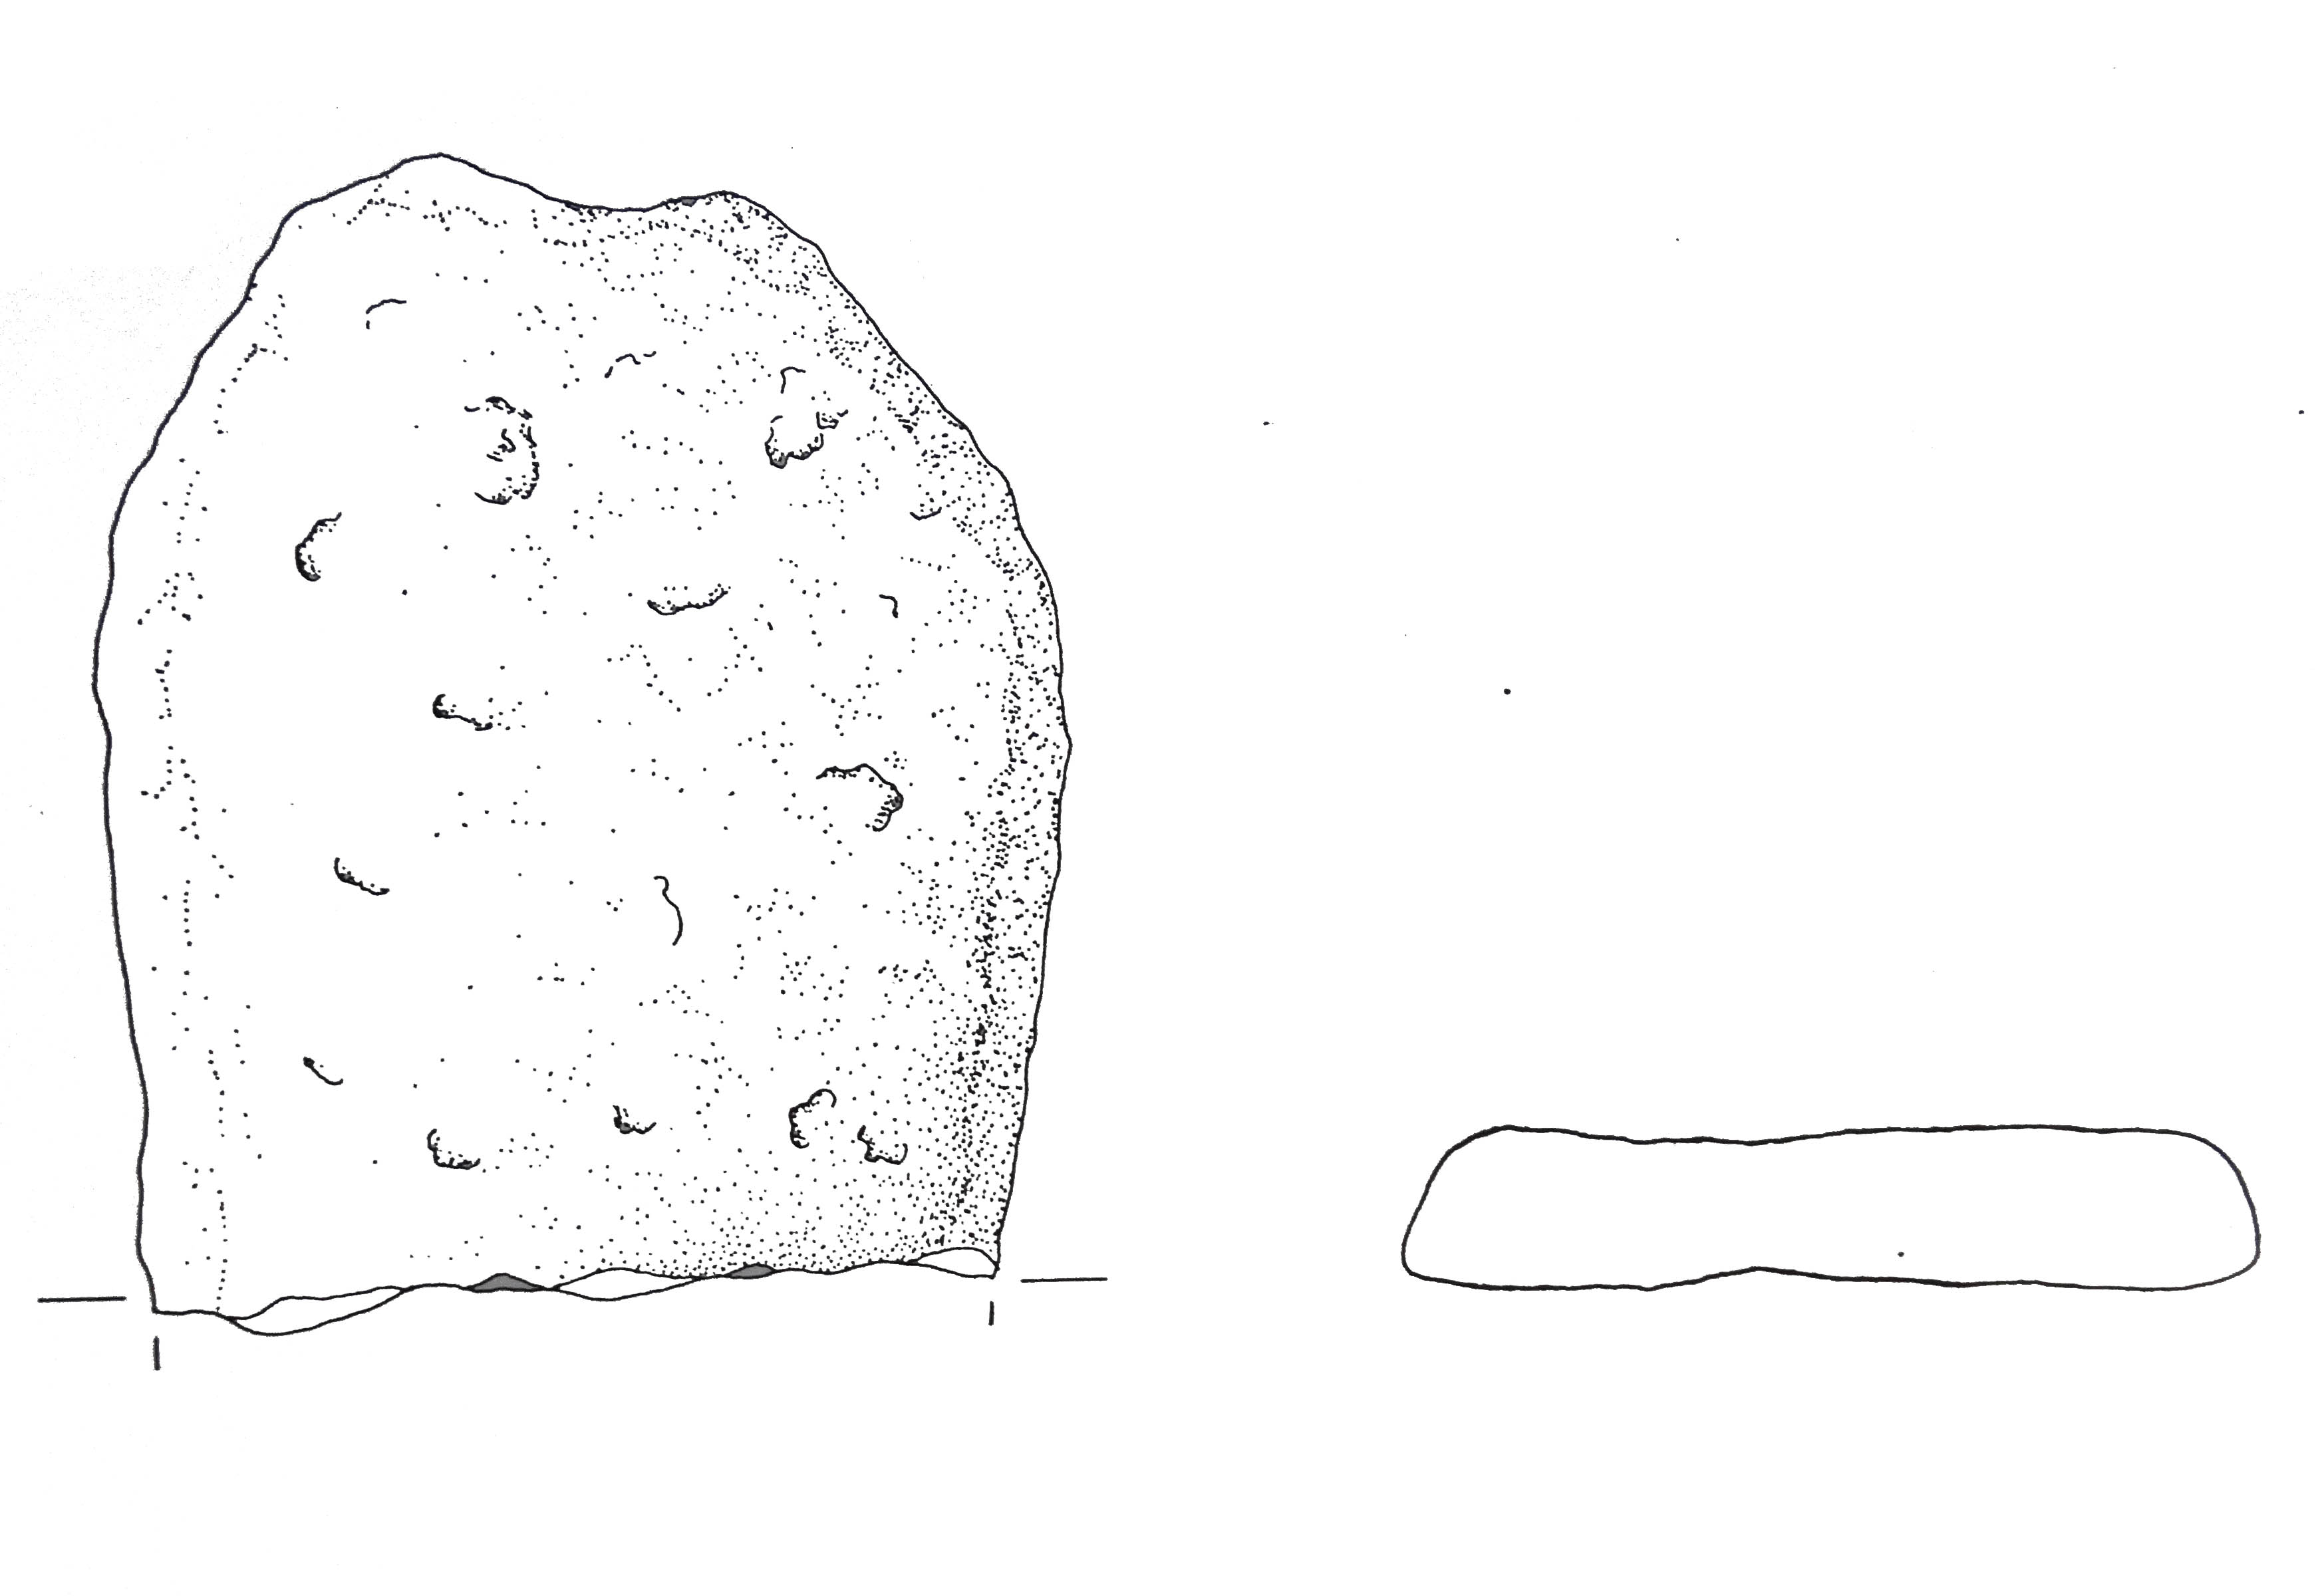 pane/frammento, a barra - Cultura dell'età del bronzo finale-Friuli Centrale (fine/inizio tarda età del Bronzo)